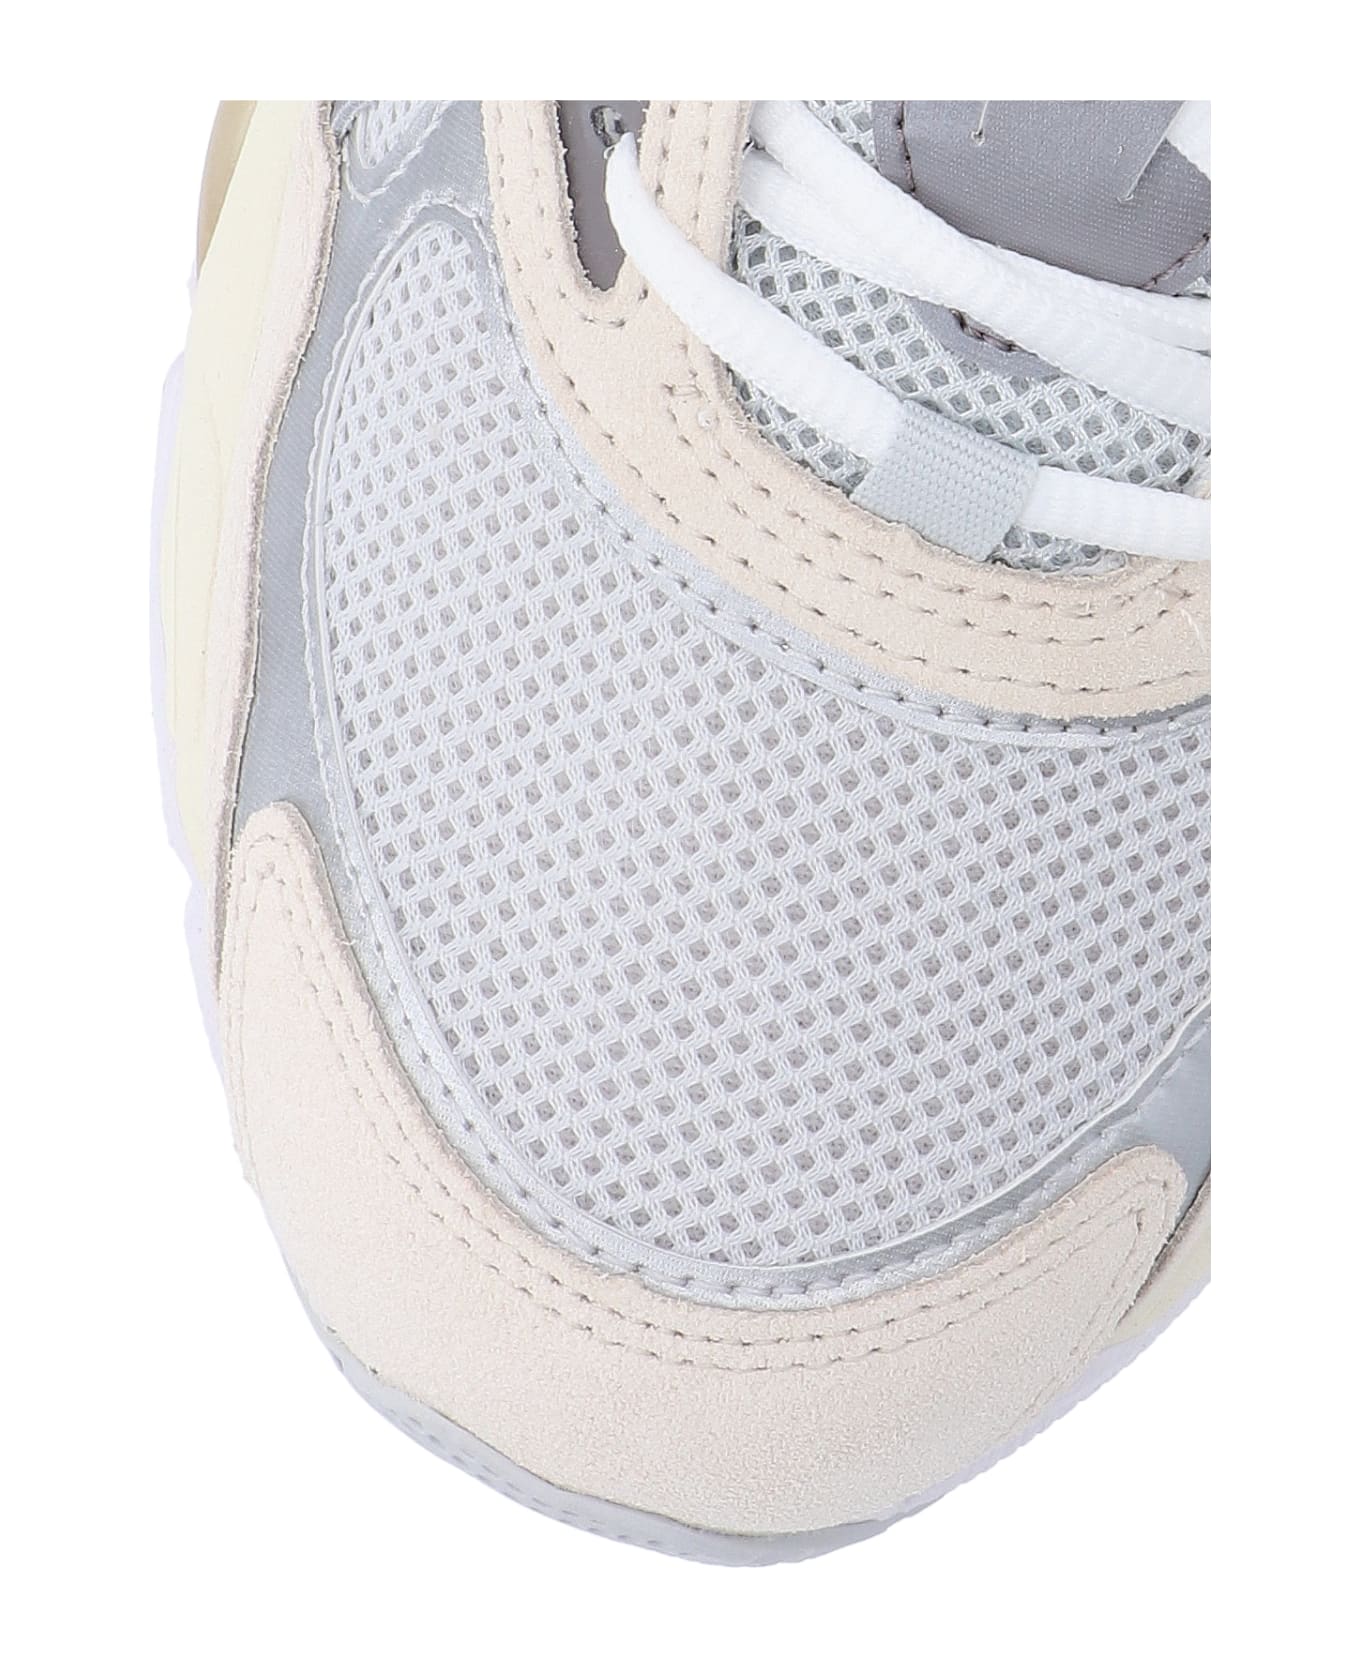 Asics Sneakers - Grey